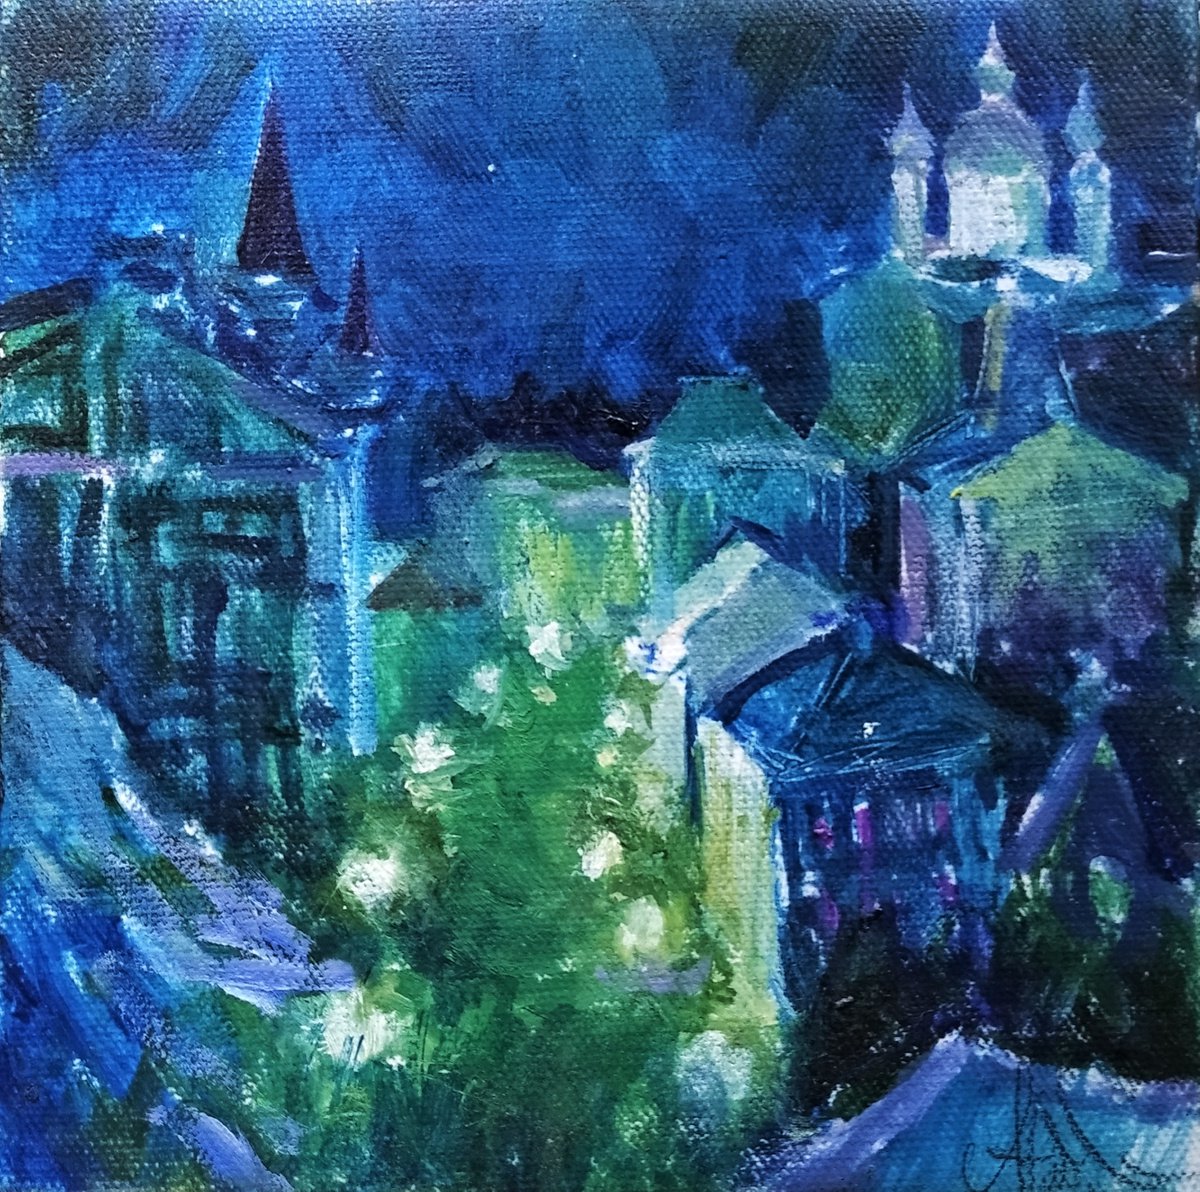 Night Kyiv by Andriy Naboka